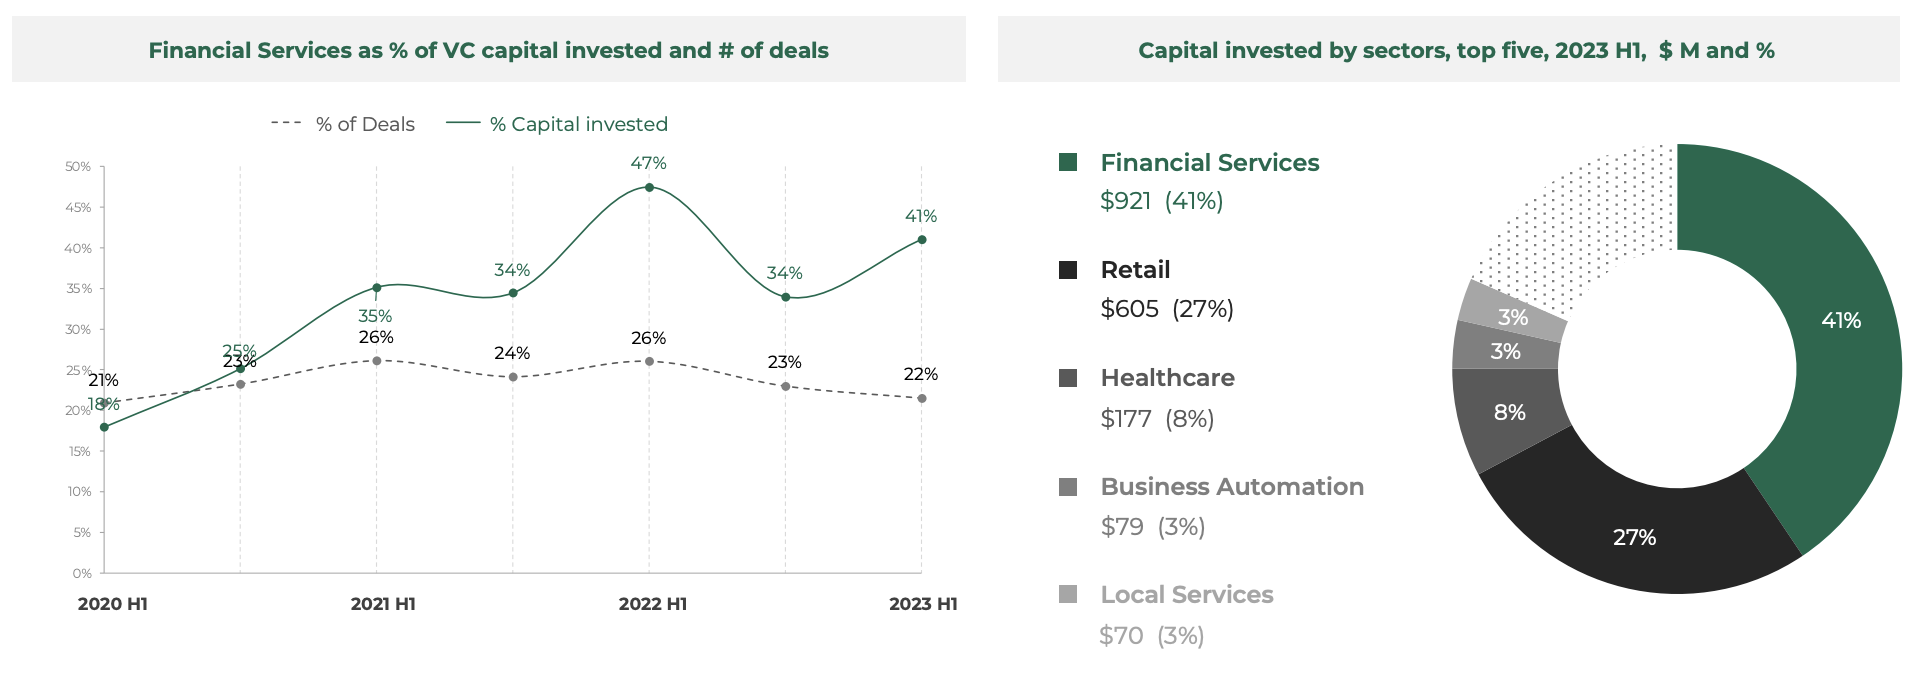 Pangsa layanan keuangan berdasarkan% modal VC yang diinvestasikan dan # kesepakatan, Sumber: Southeast Asia Tech Investment 2023 H1, Cento Ventures, Des 2023